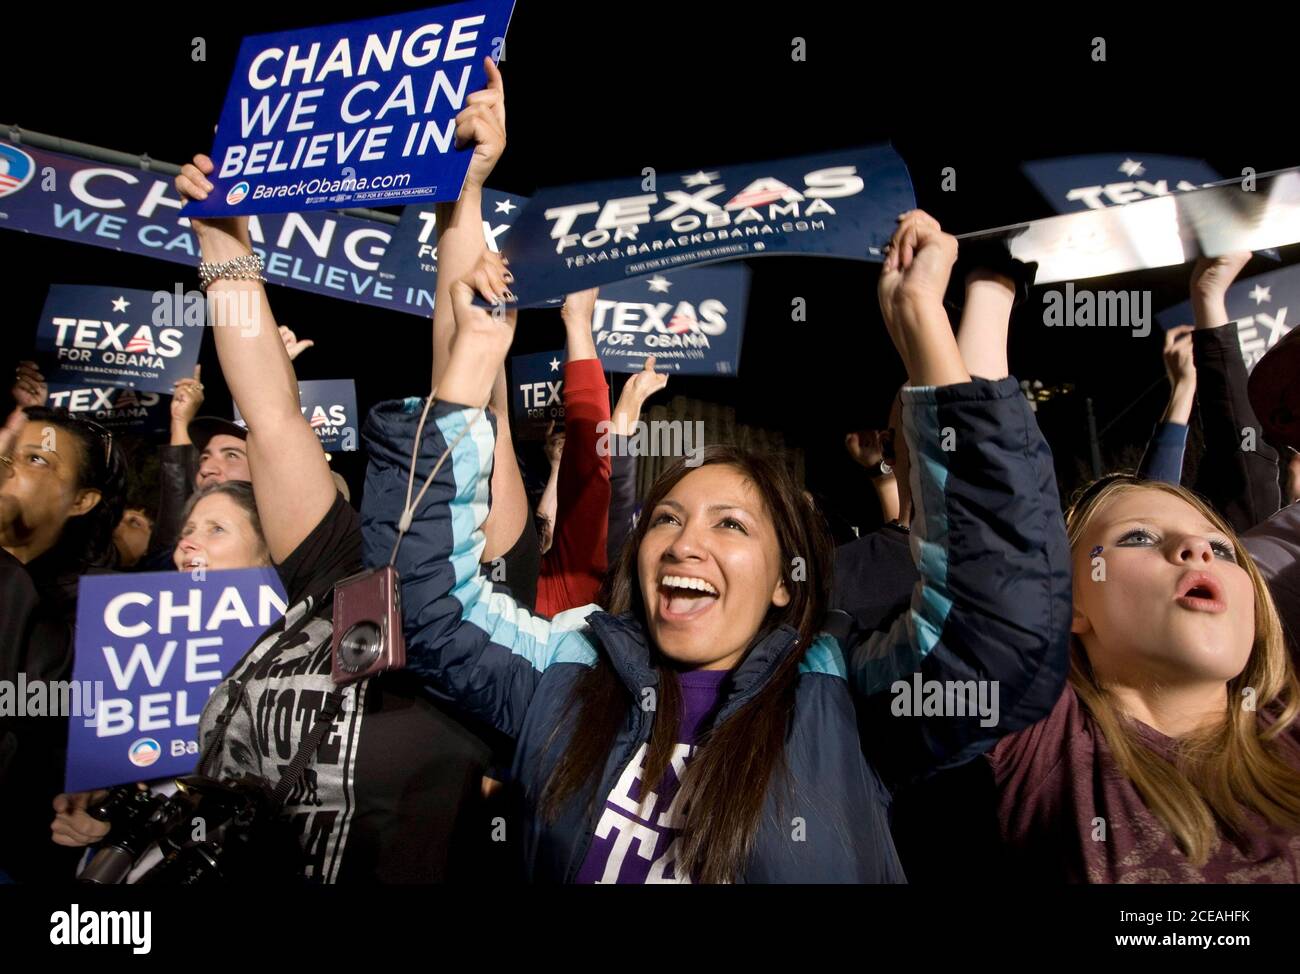 Austin, TX 22. Februar 2008: Texaner hören dem demokratischen Kandidaten Barack Obama zu, der in der Innenstadt von Austin im State Capitol spricht. Etwa 15,000 stellten sich heraus, dass Obama seine Anhänger inspirieren ließ, sich in den Wahlprozess einzubringen. ©Bob Daemmrich Stockfoto